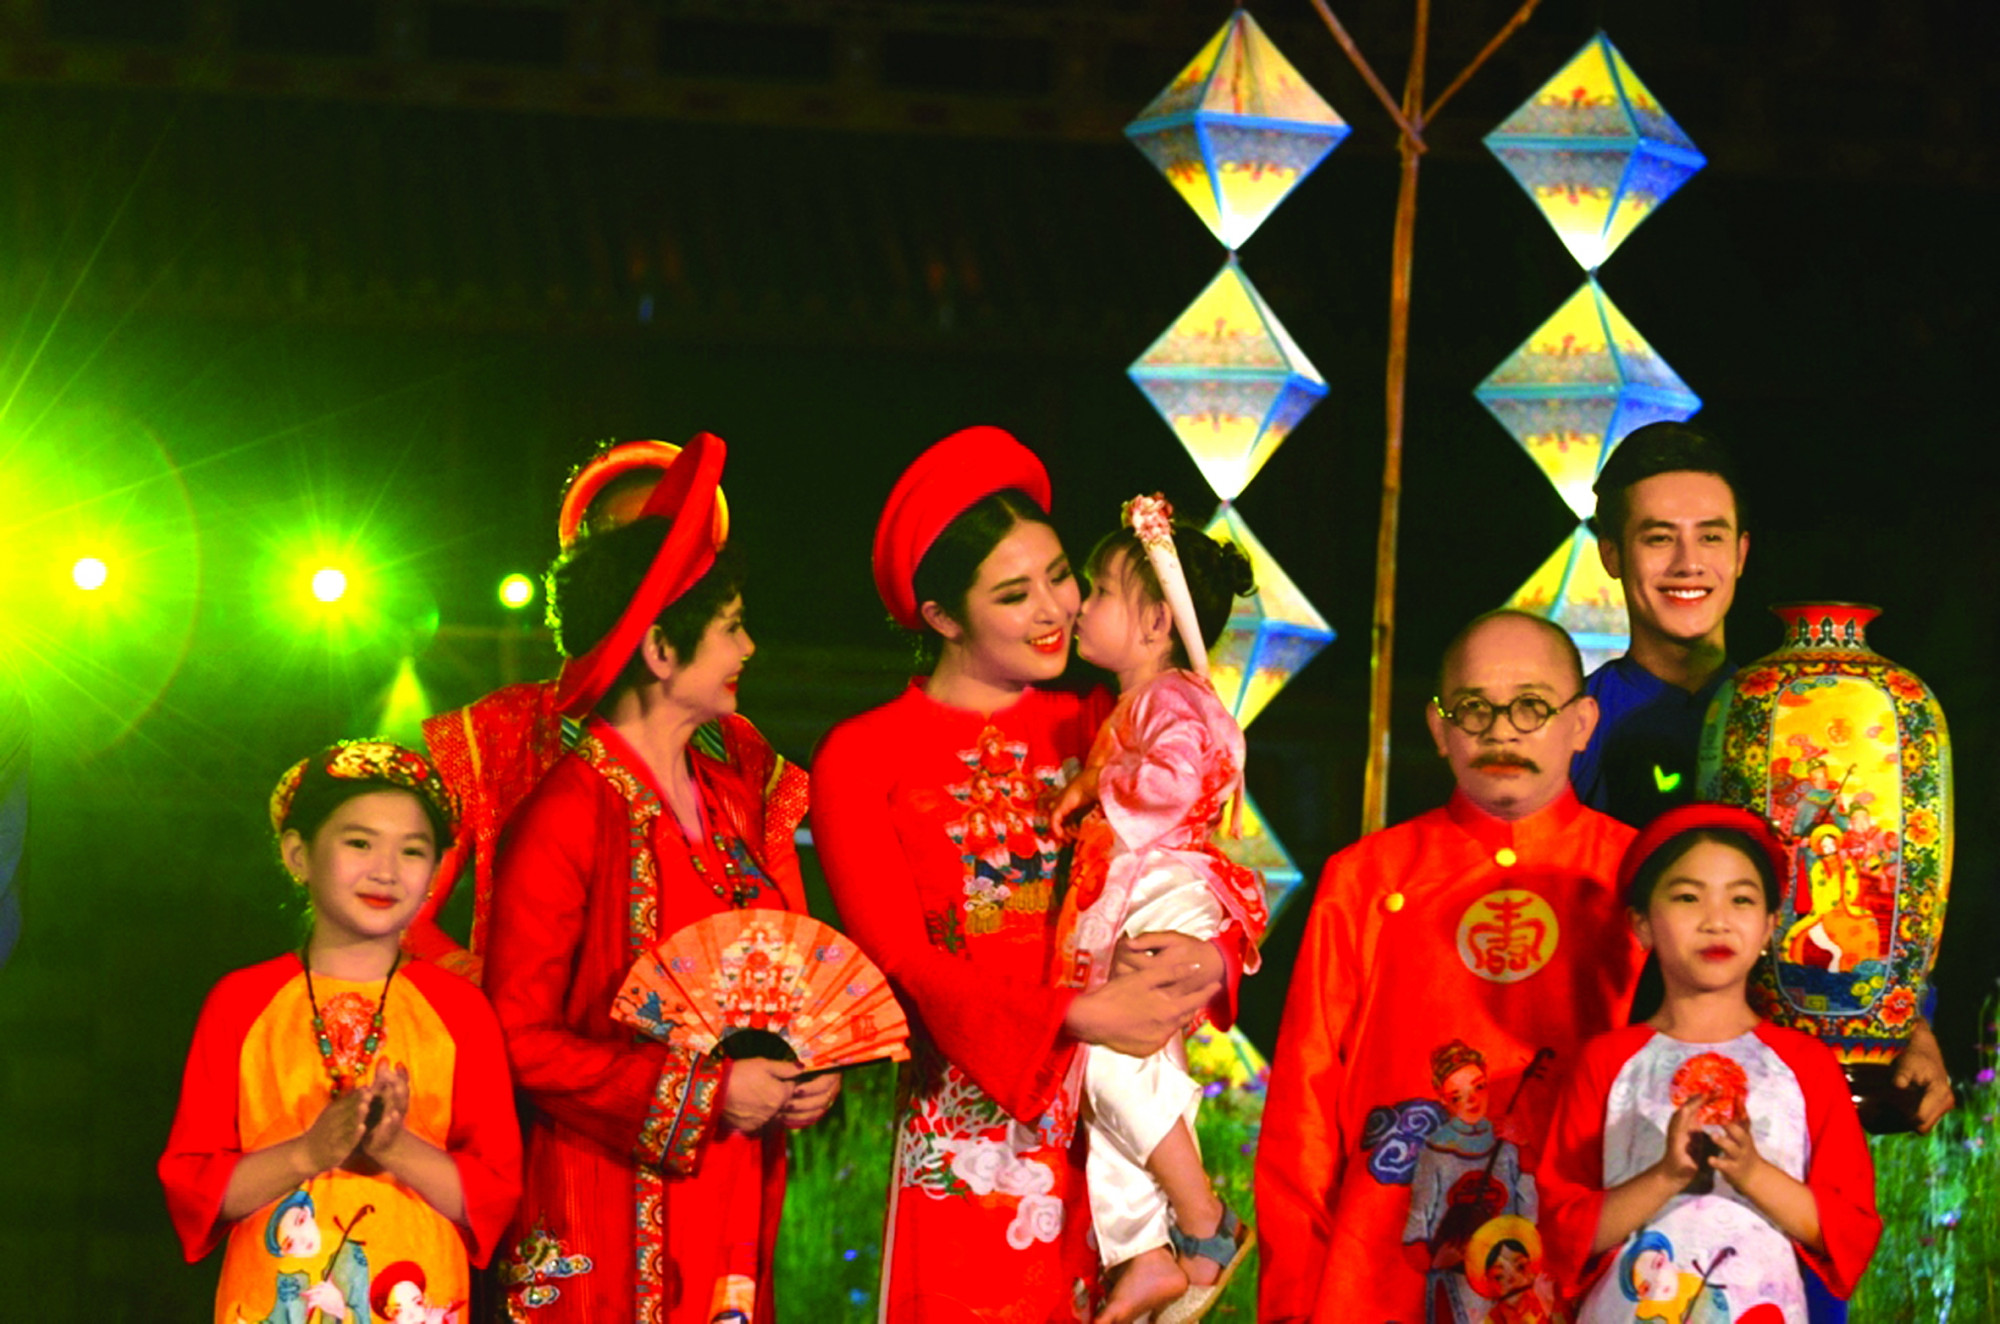 Hoa hậu Ngọc Hân (giữa) trình diễn áo dài truyền thống Việt Nam với chủ đề Áo dài trên con đường di sản tại Festival Nghề truyền thống Huế 2019 ẢNH: THUẬN HÓA